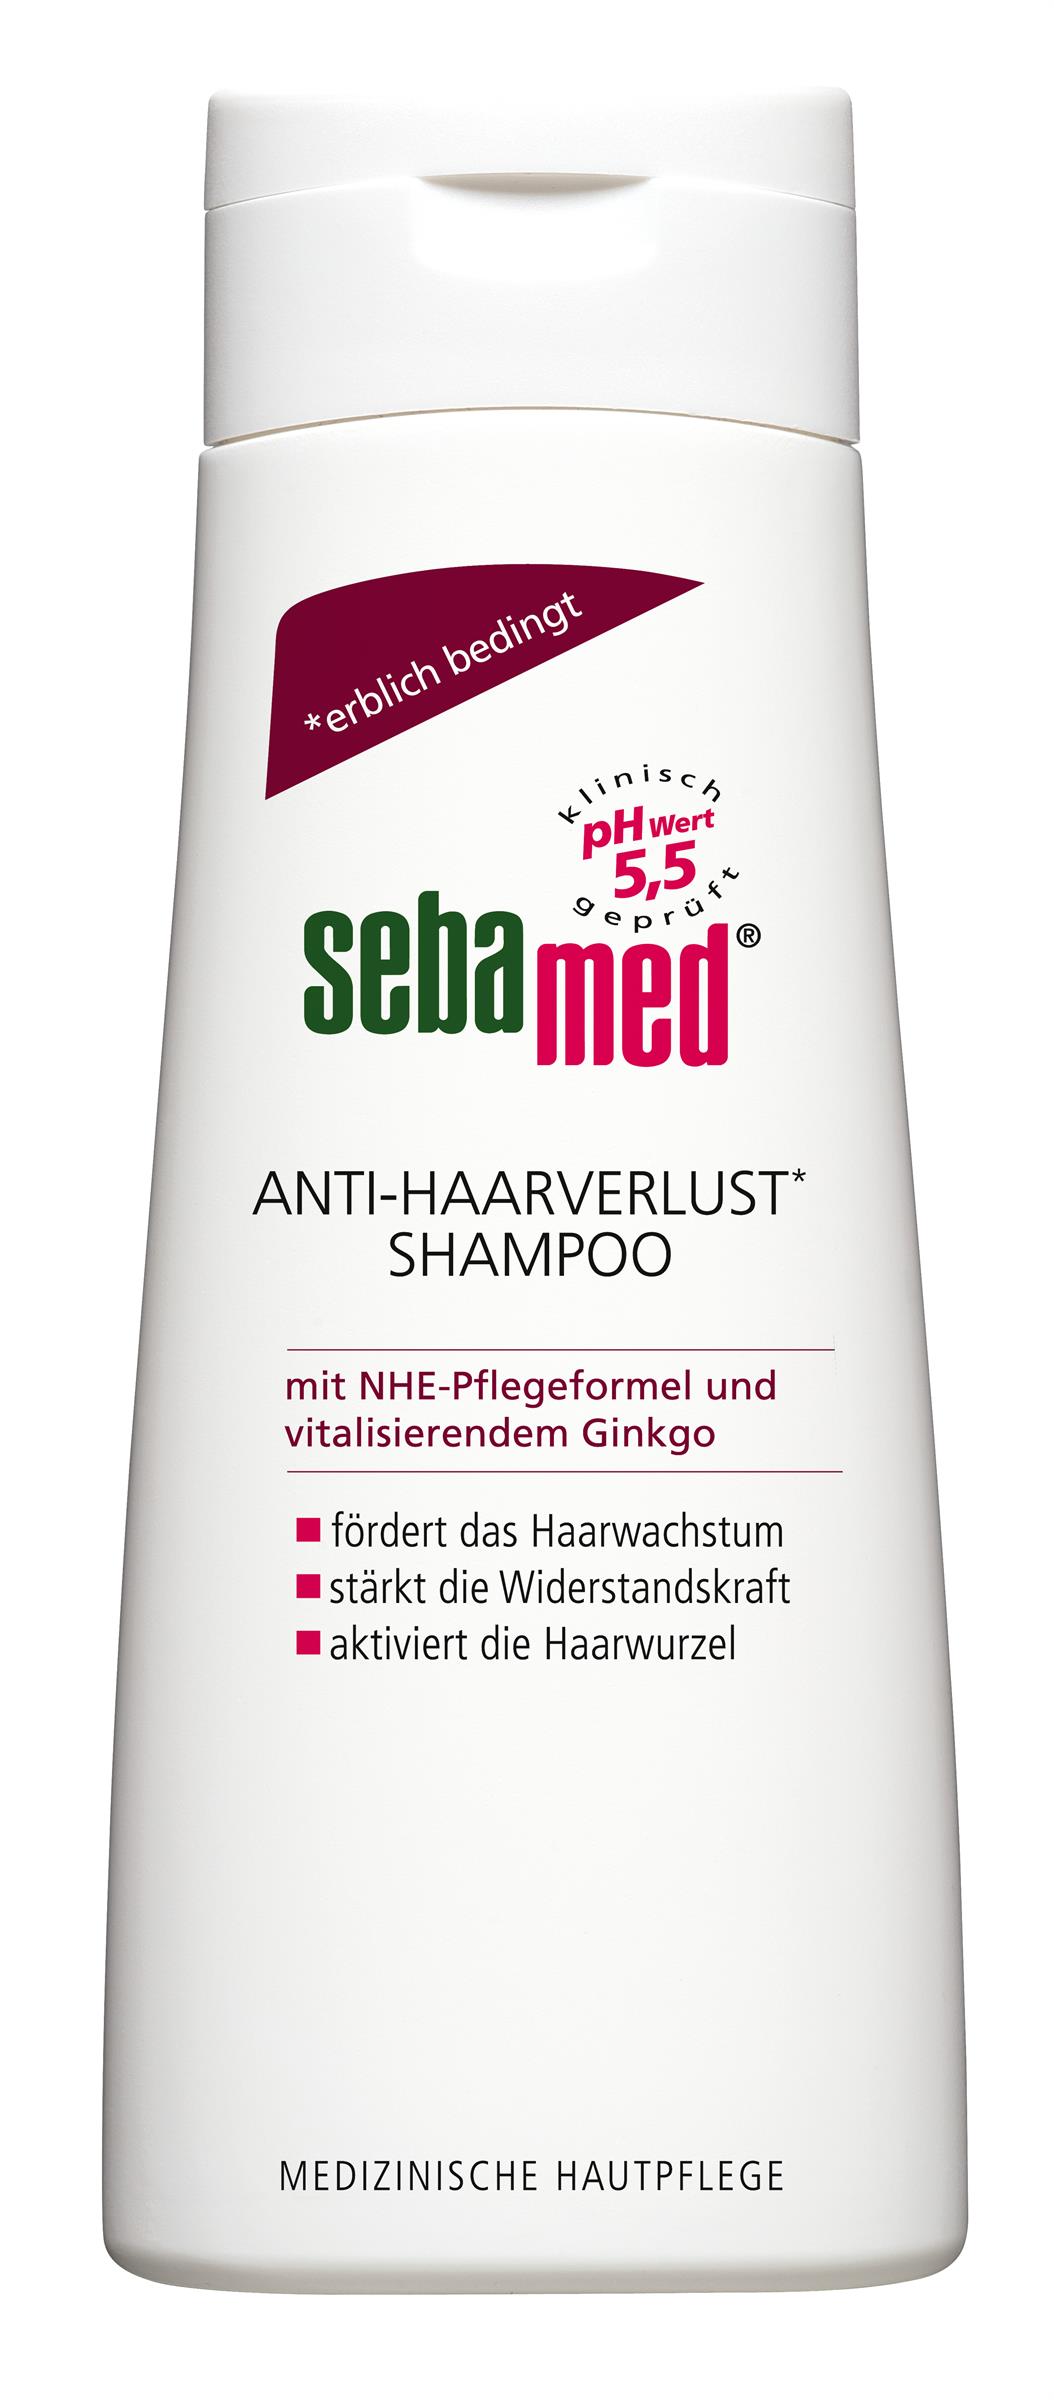 sebamed Anti-Haarverlust Shampoo 200 ml (UVP 5,05): erhältlich bei dm drogerie markt